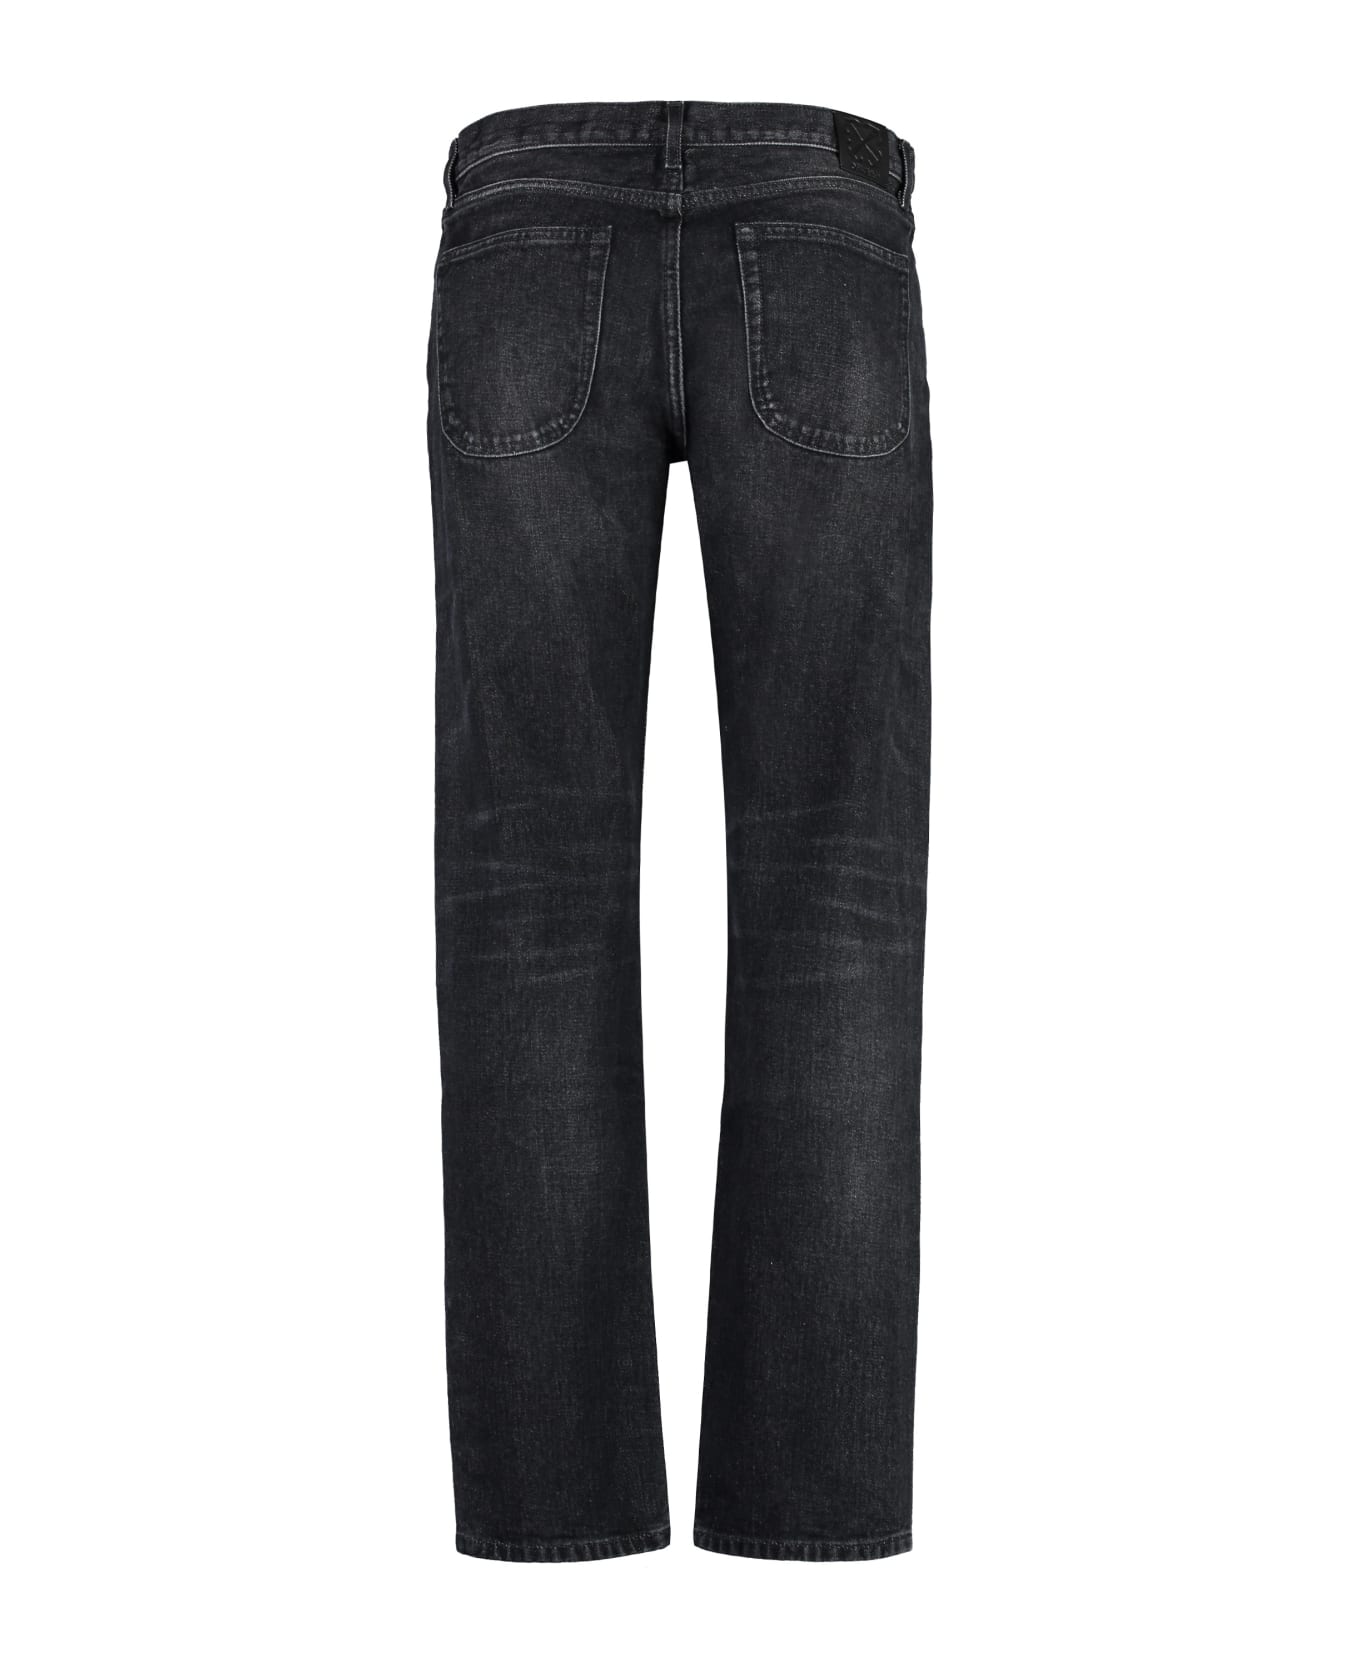 Off-White 5-pocket Straight-leg Jeans - black デニム